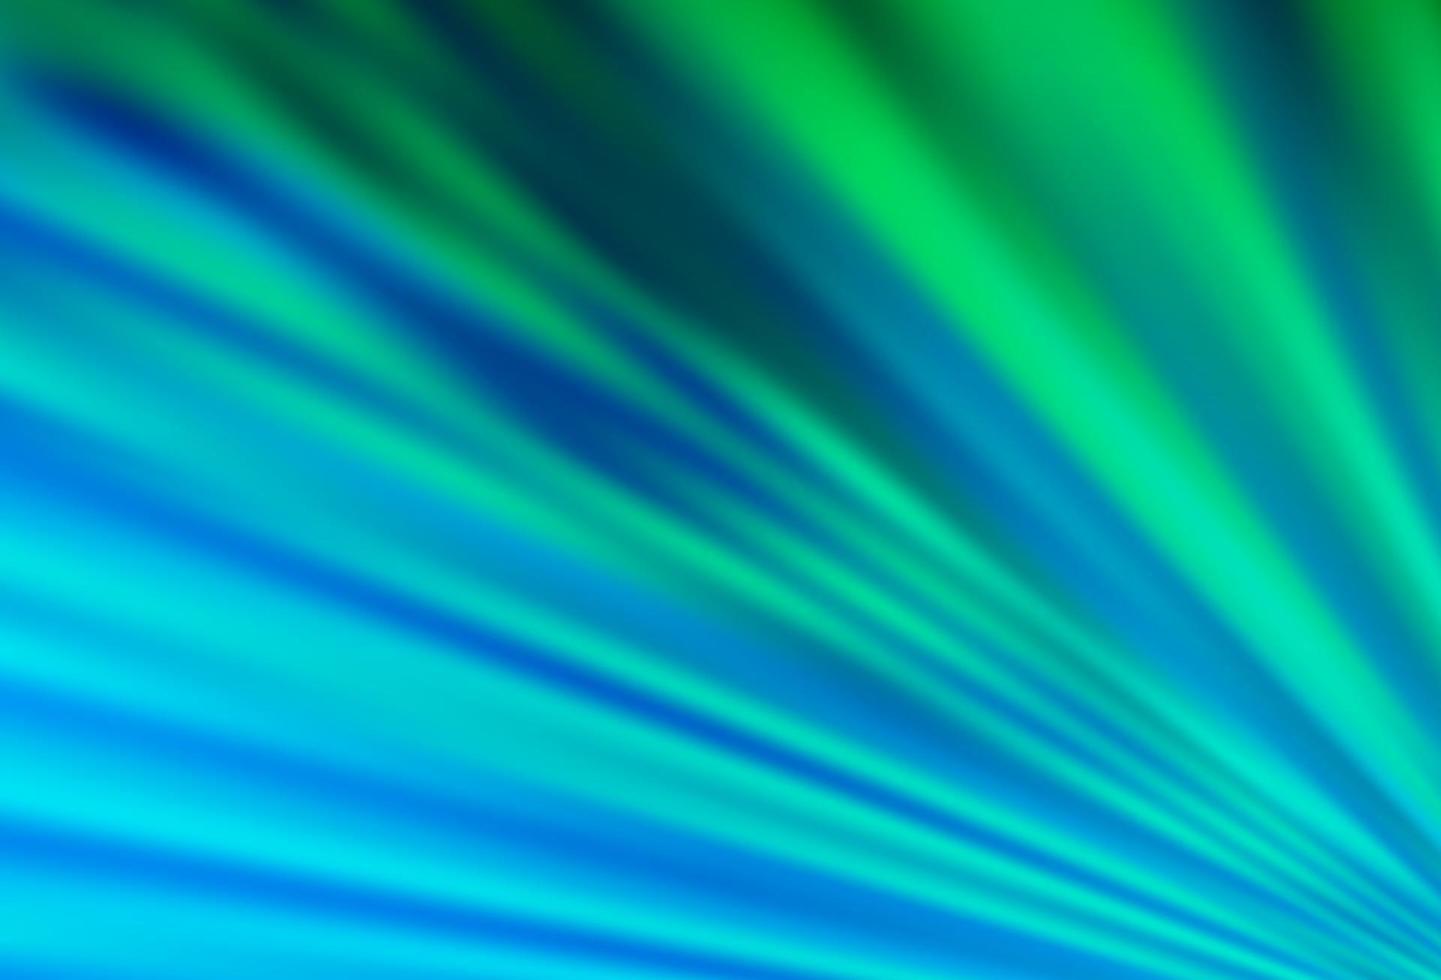 ljusblå, grön vektorstruktur med färgade linjer. vektor